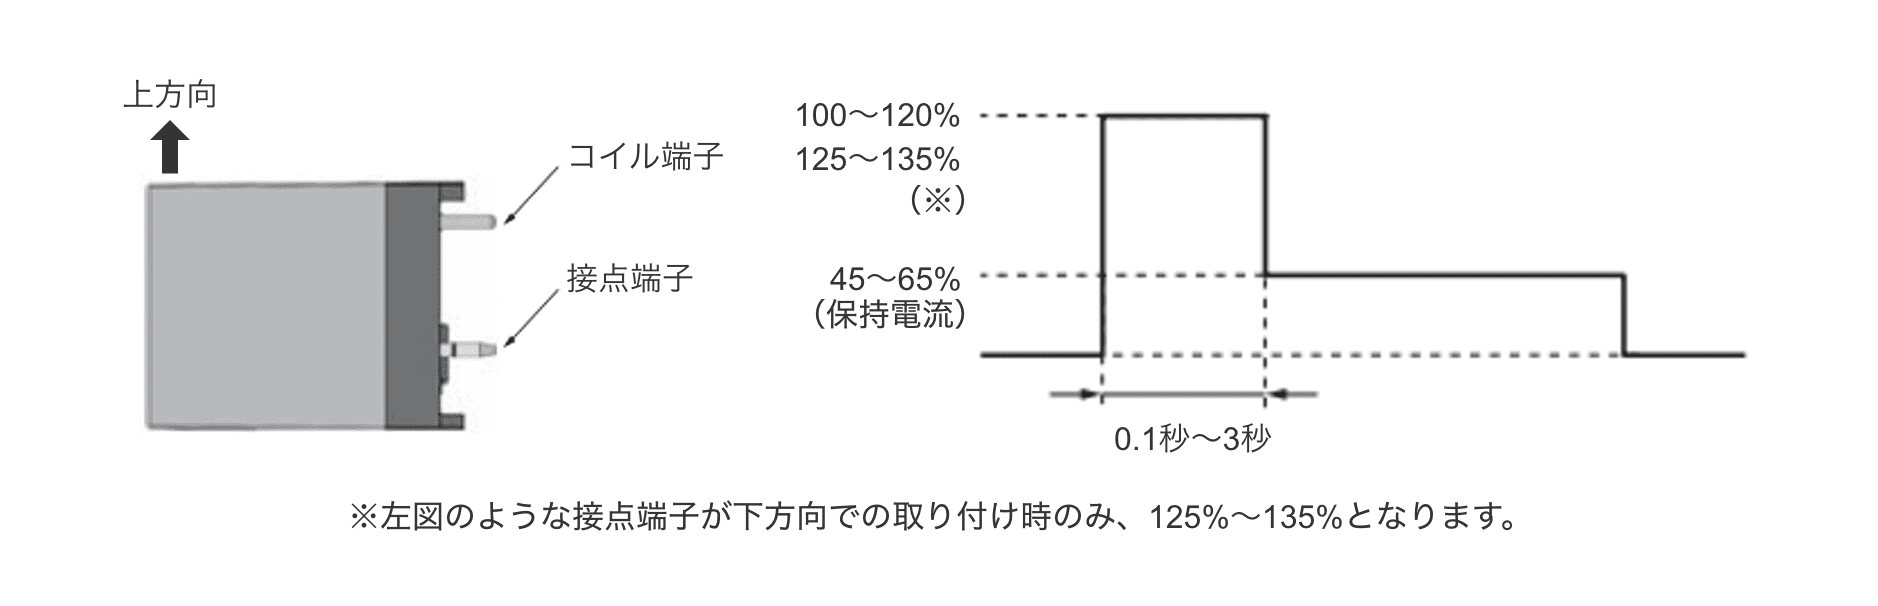 ※左図のような接点端子が下方向での取り付け時のみ、125%〜135%となります。